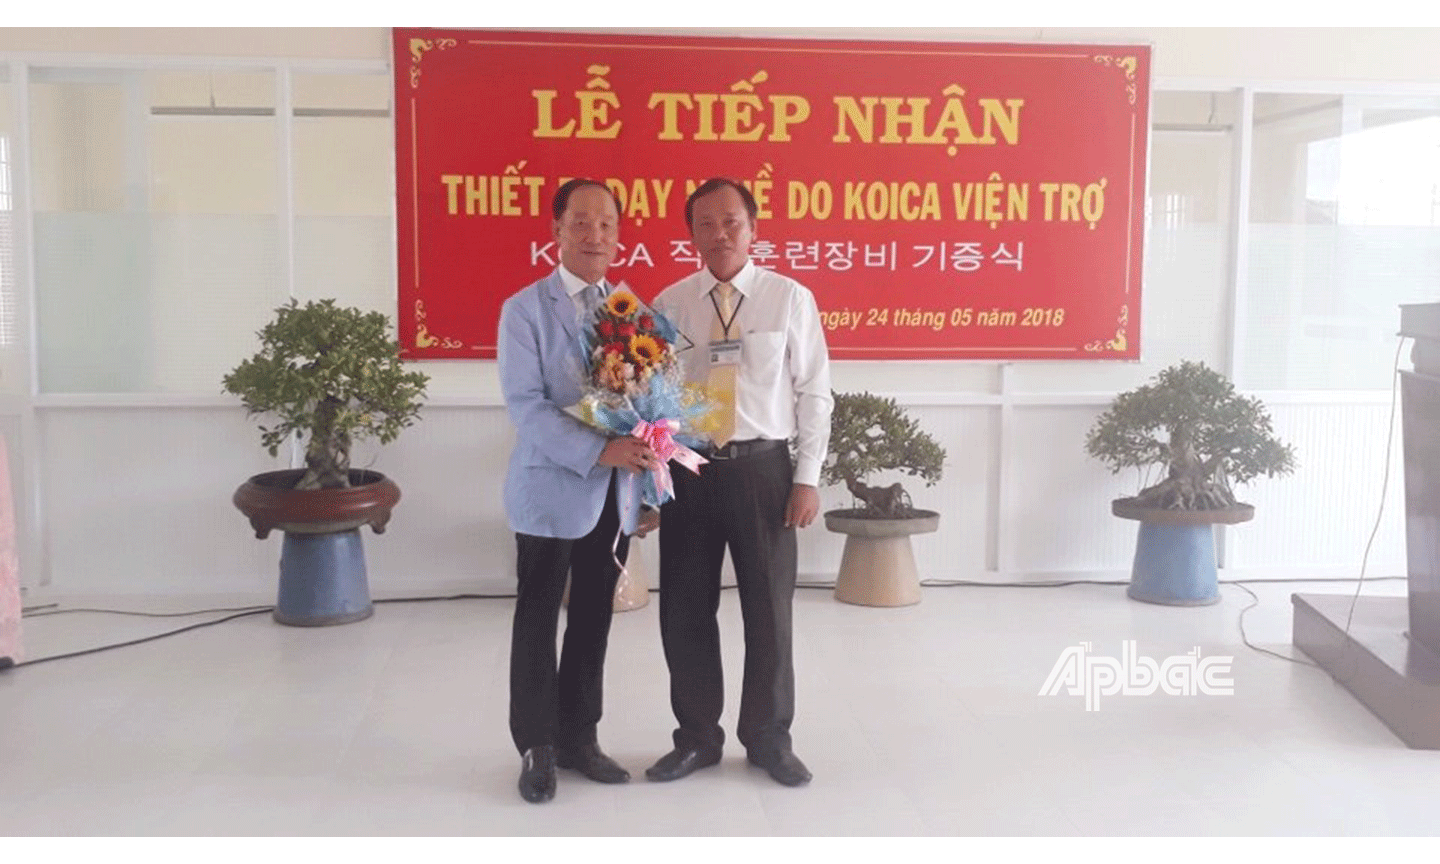 Hiệu trưởng Nguyễn Quang Khải tiếp nhận 